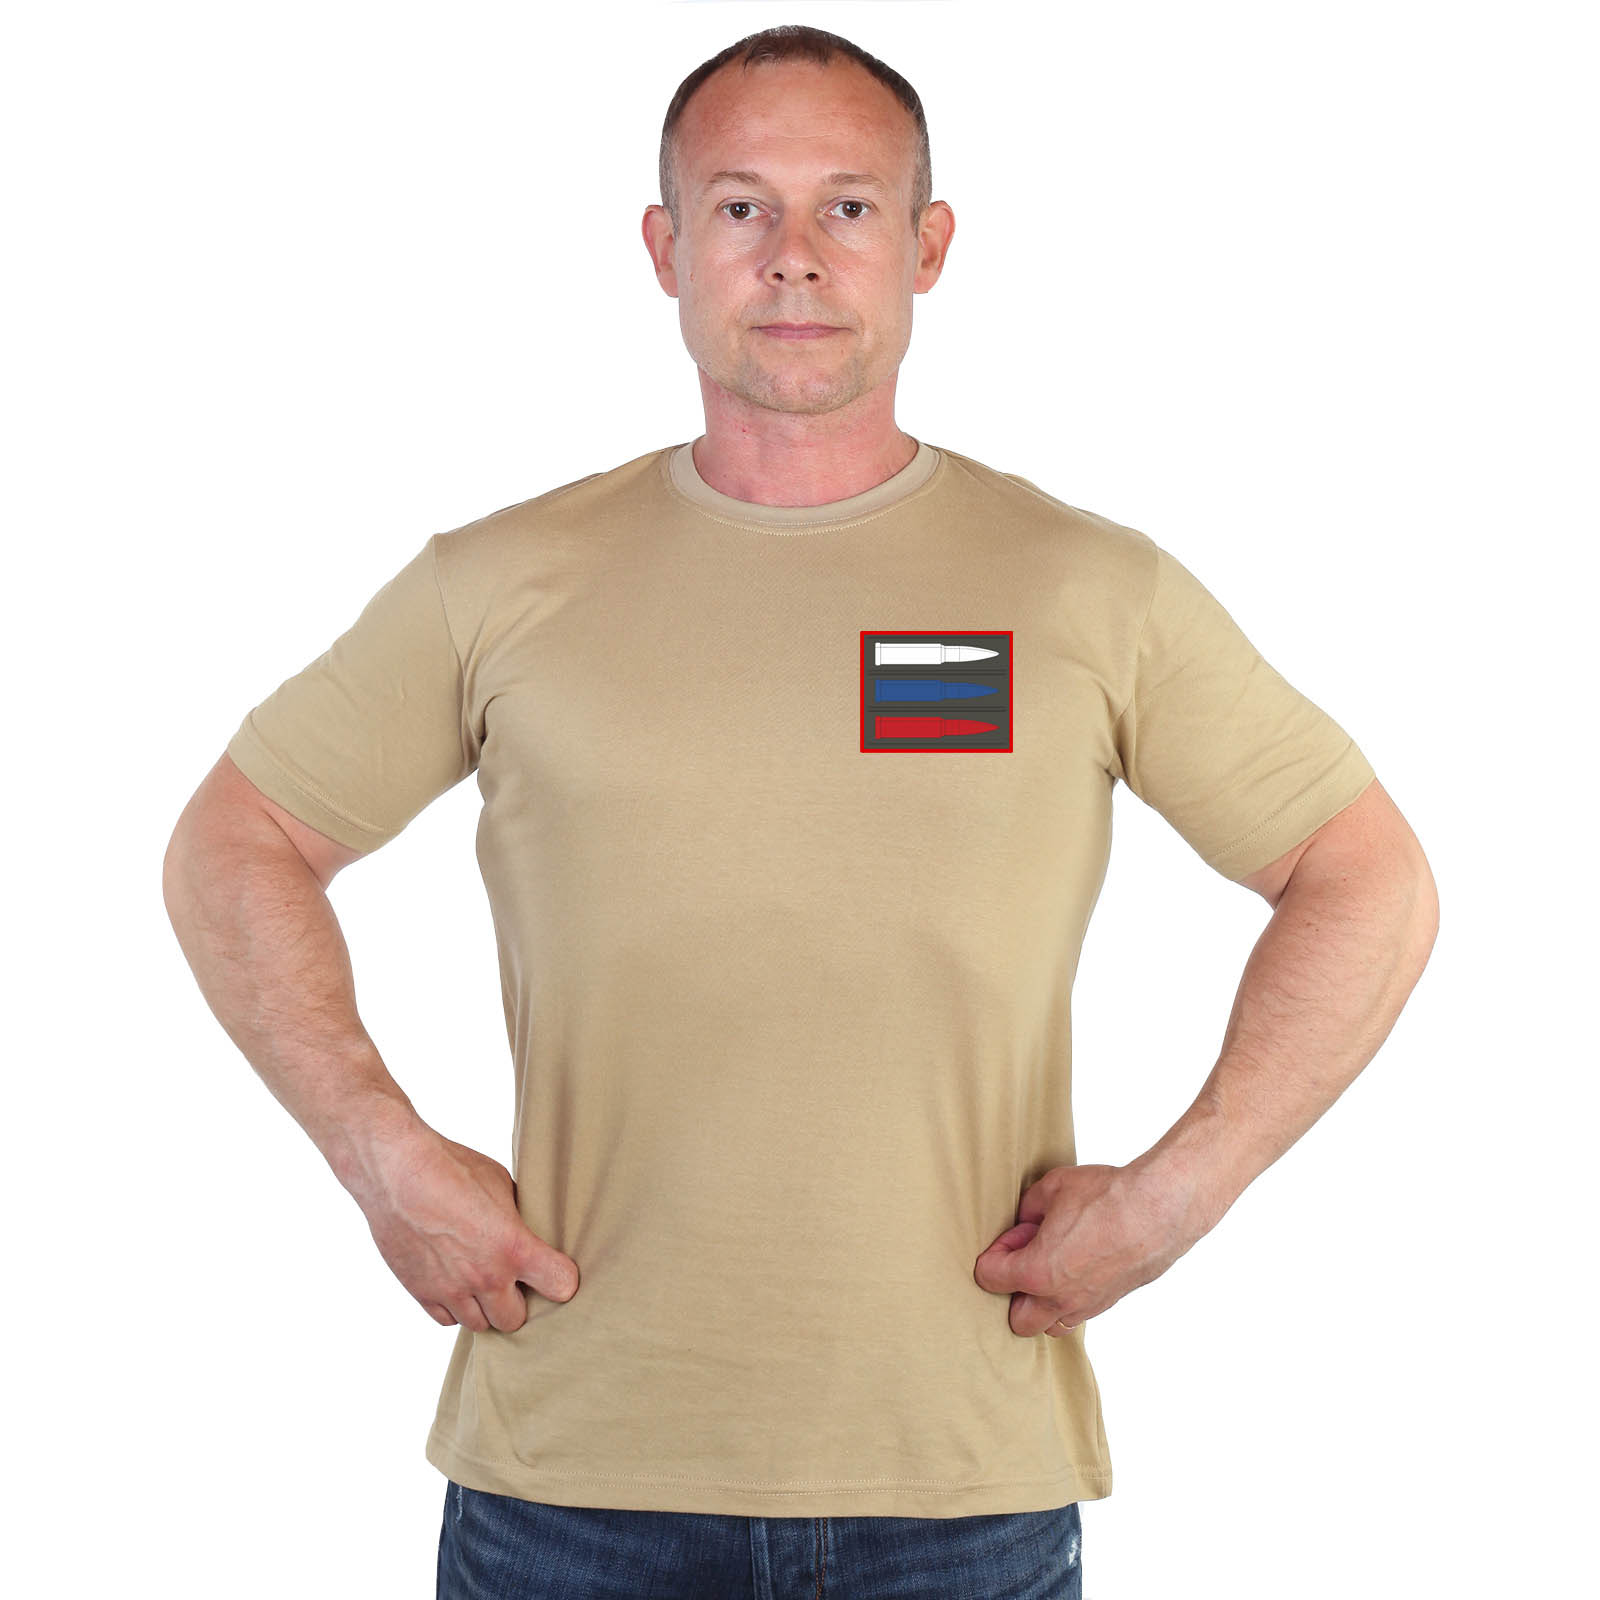 Песочная футболка с термотрансфером "Триколор из патронов"